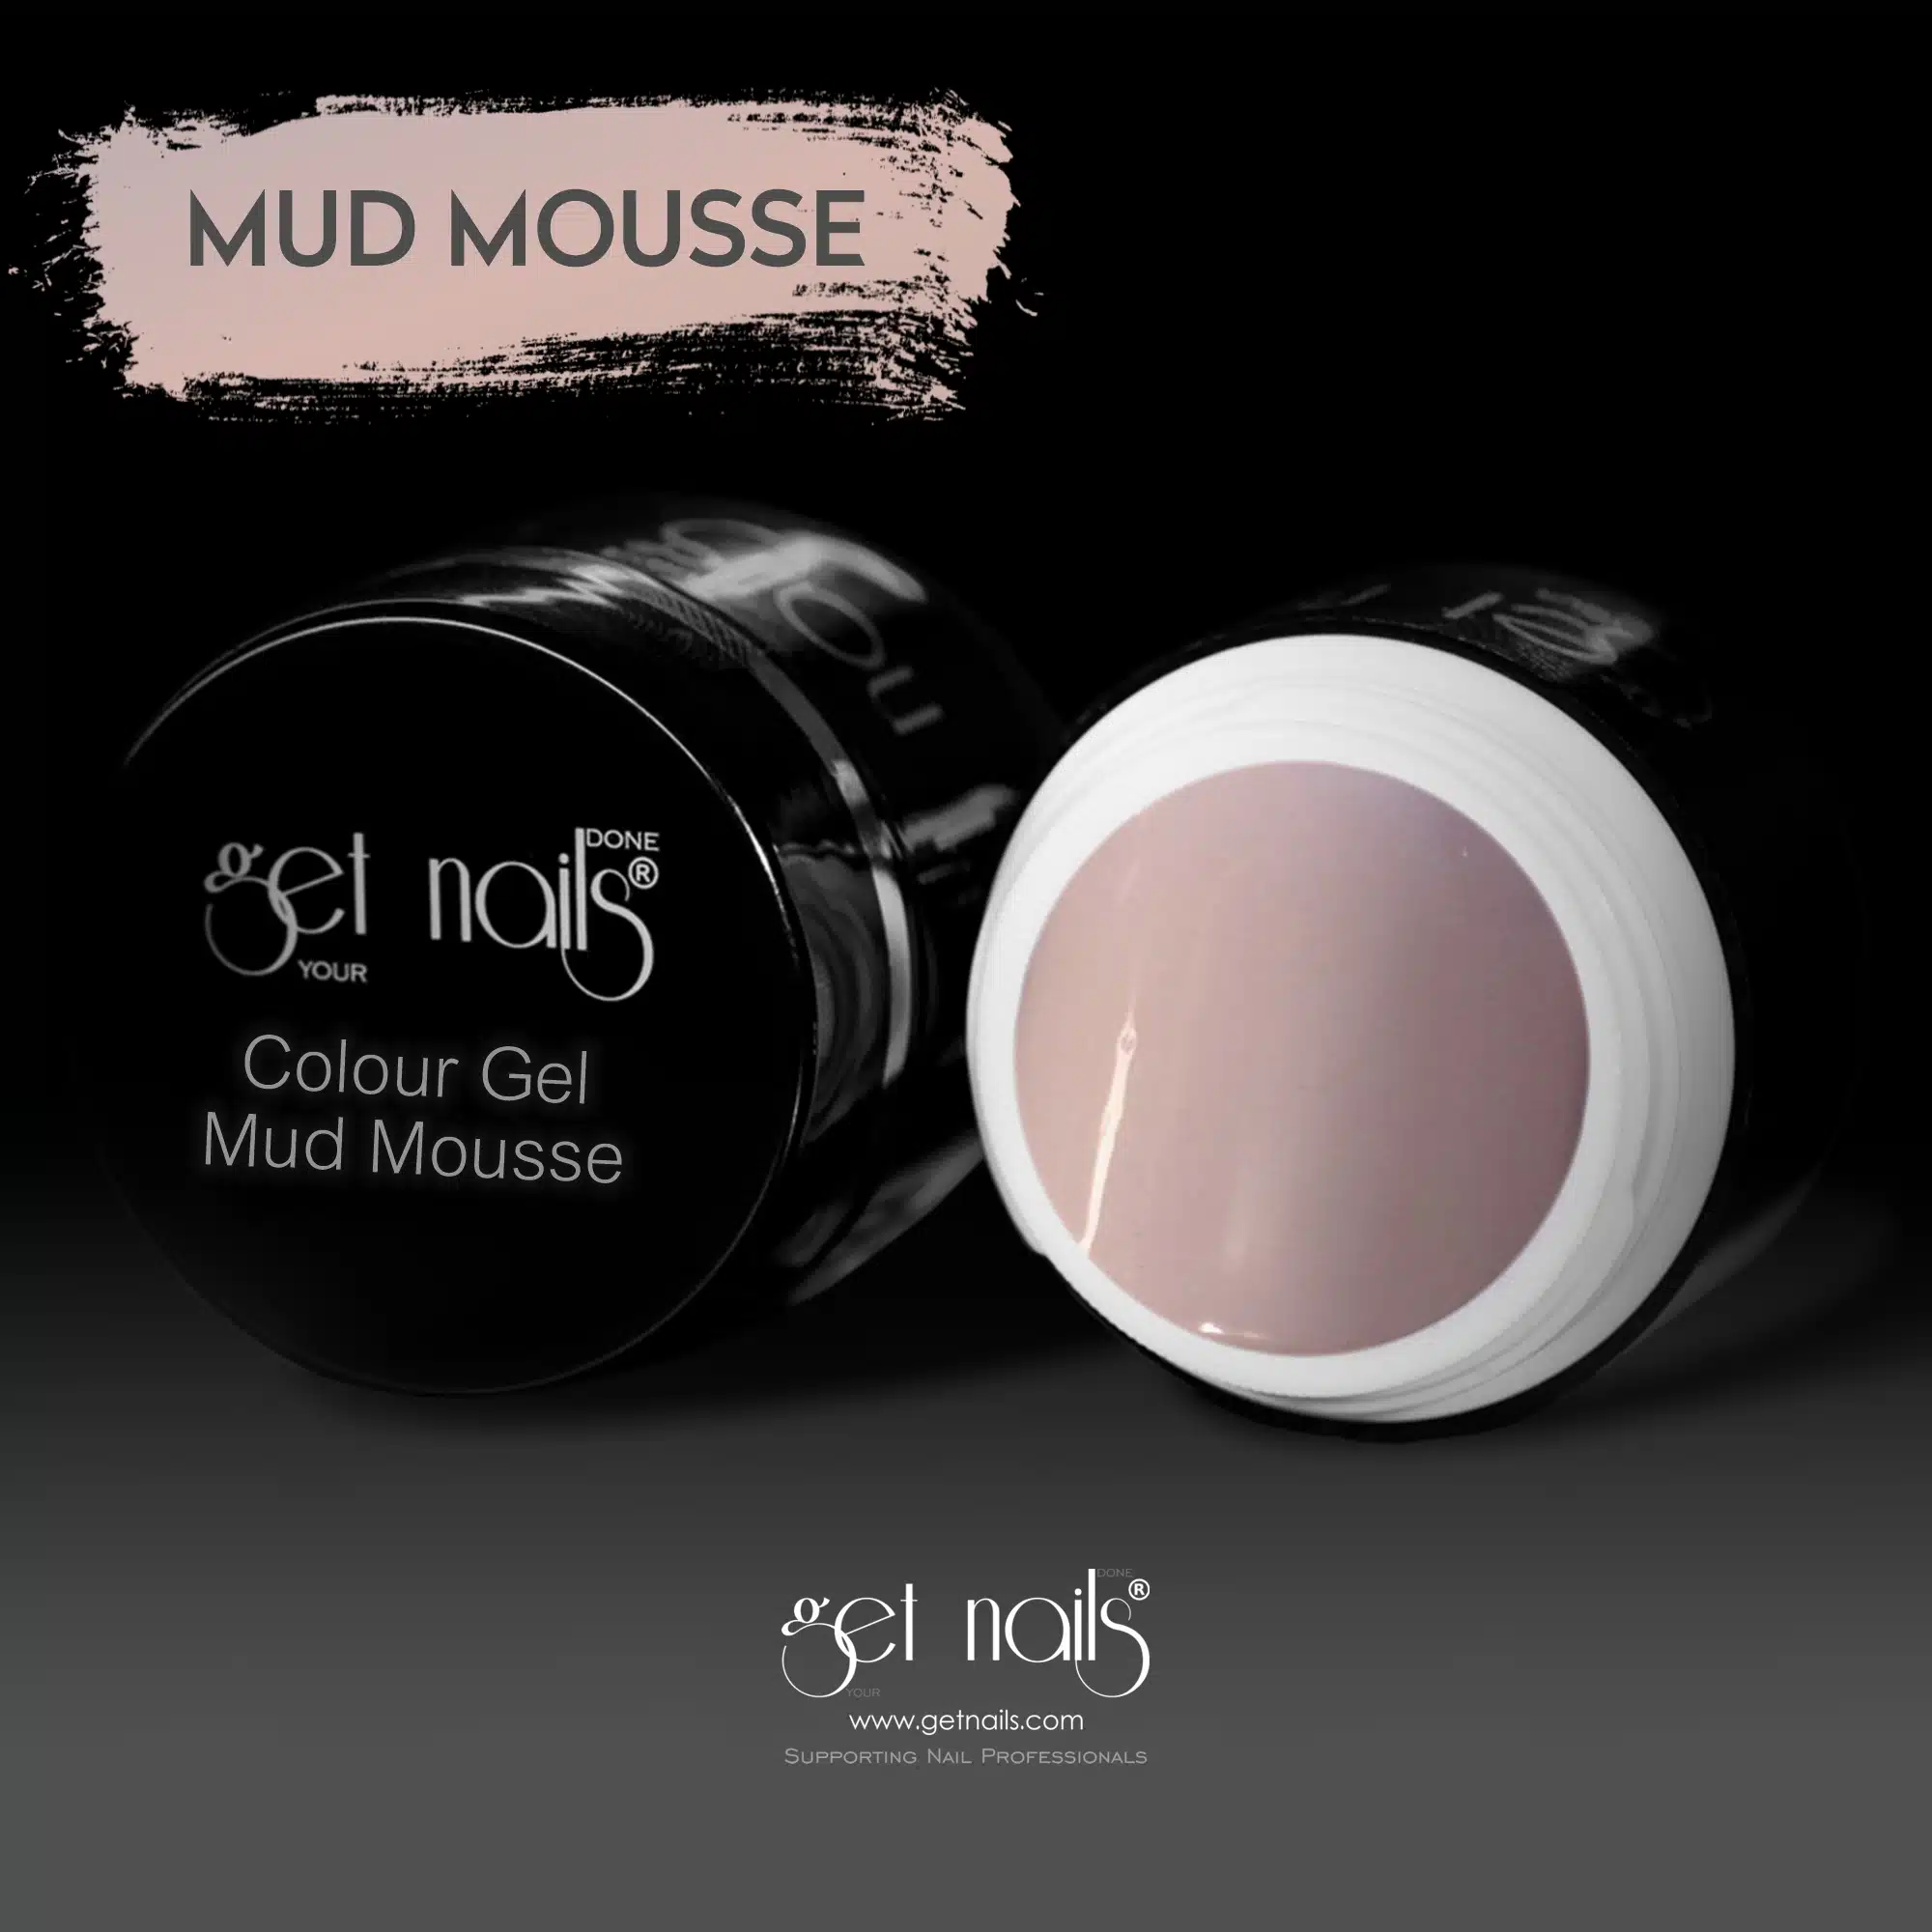 Get Nails Austria - Colour Gel Mud Mousse 5g